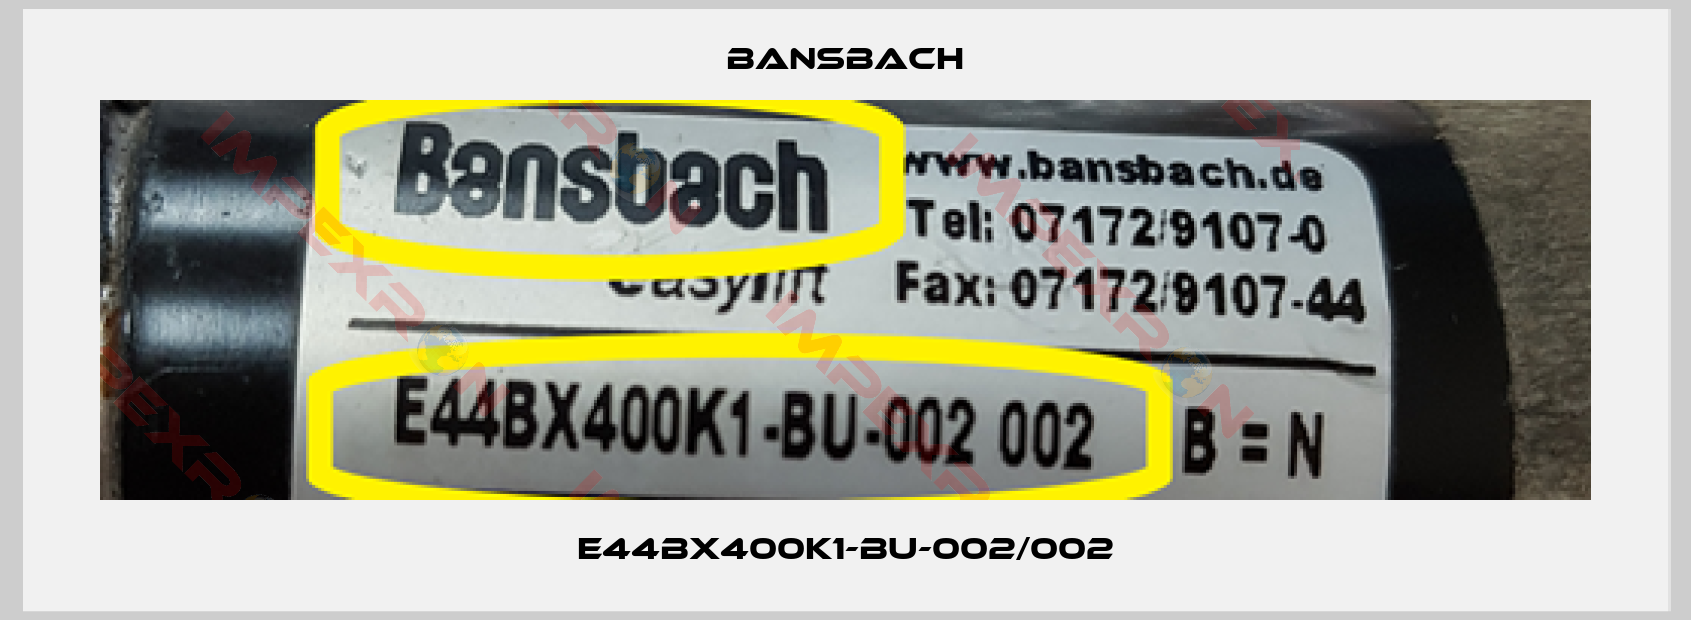 Bansbach-E44BX400K1-BU-002/002